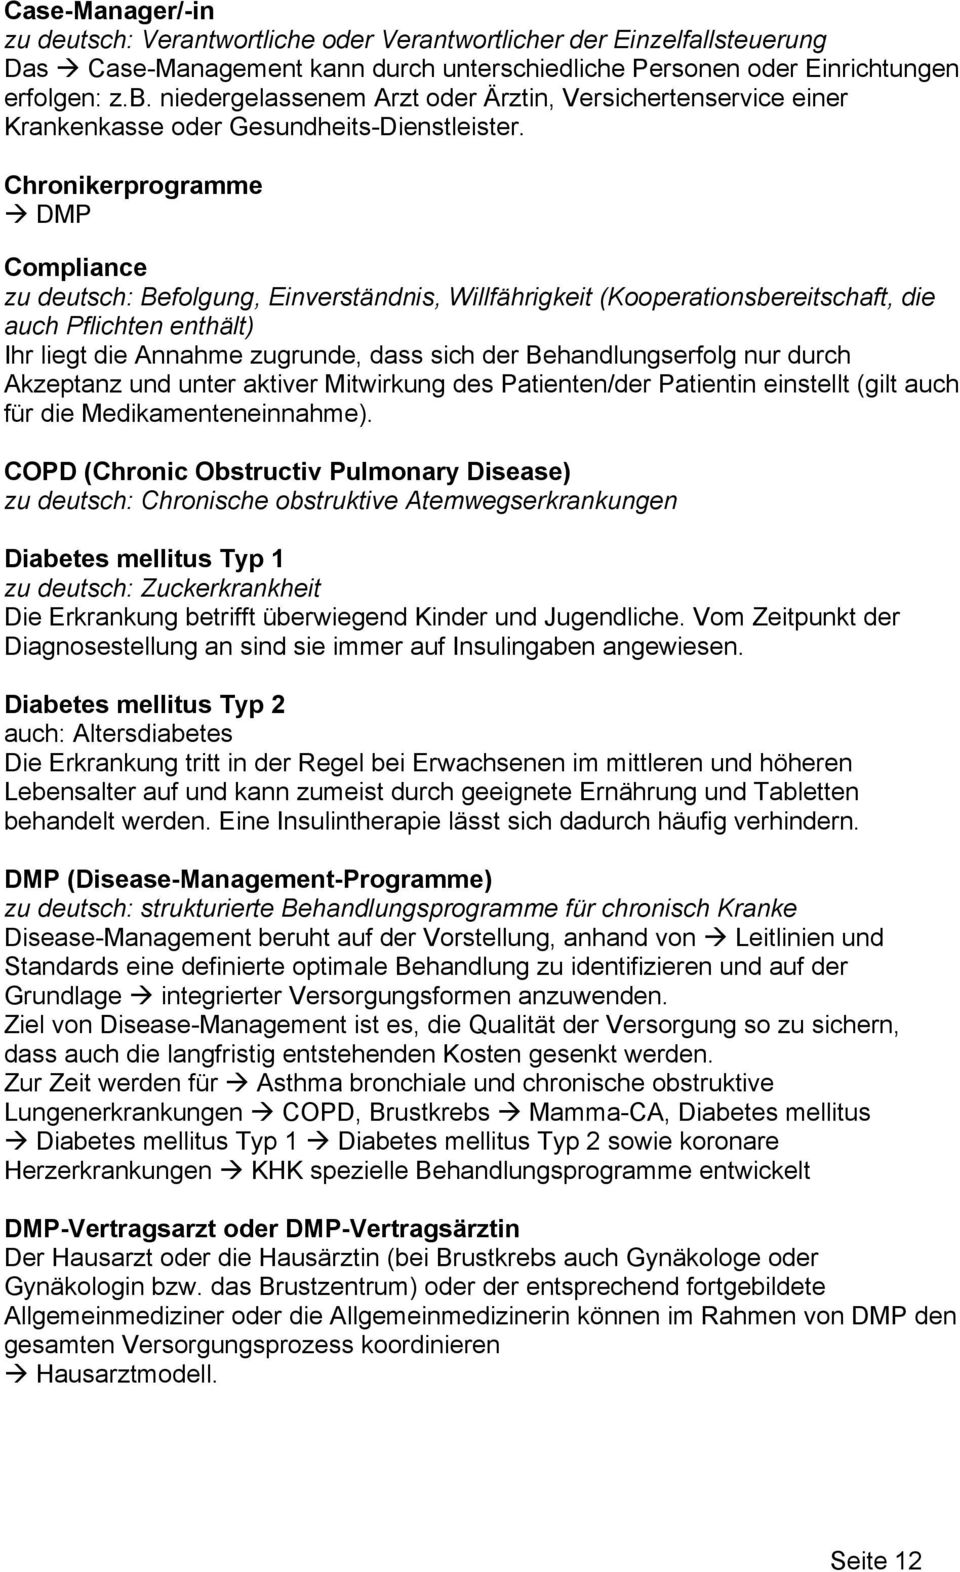 Chronikerprogramme DMP Compliance zu deutsch: Befolgung, Einverständnis, Willfährigkeit (Kooperationsbereitschaft, die auch Pflichten enthält) Ihr liegt die Annahme zugrunde, dass sich der